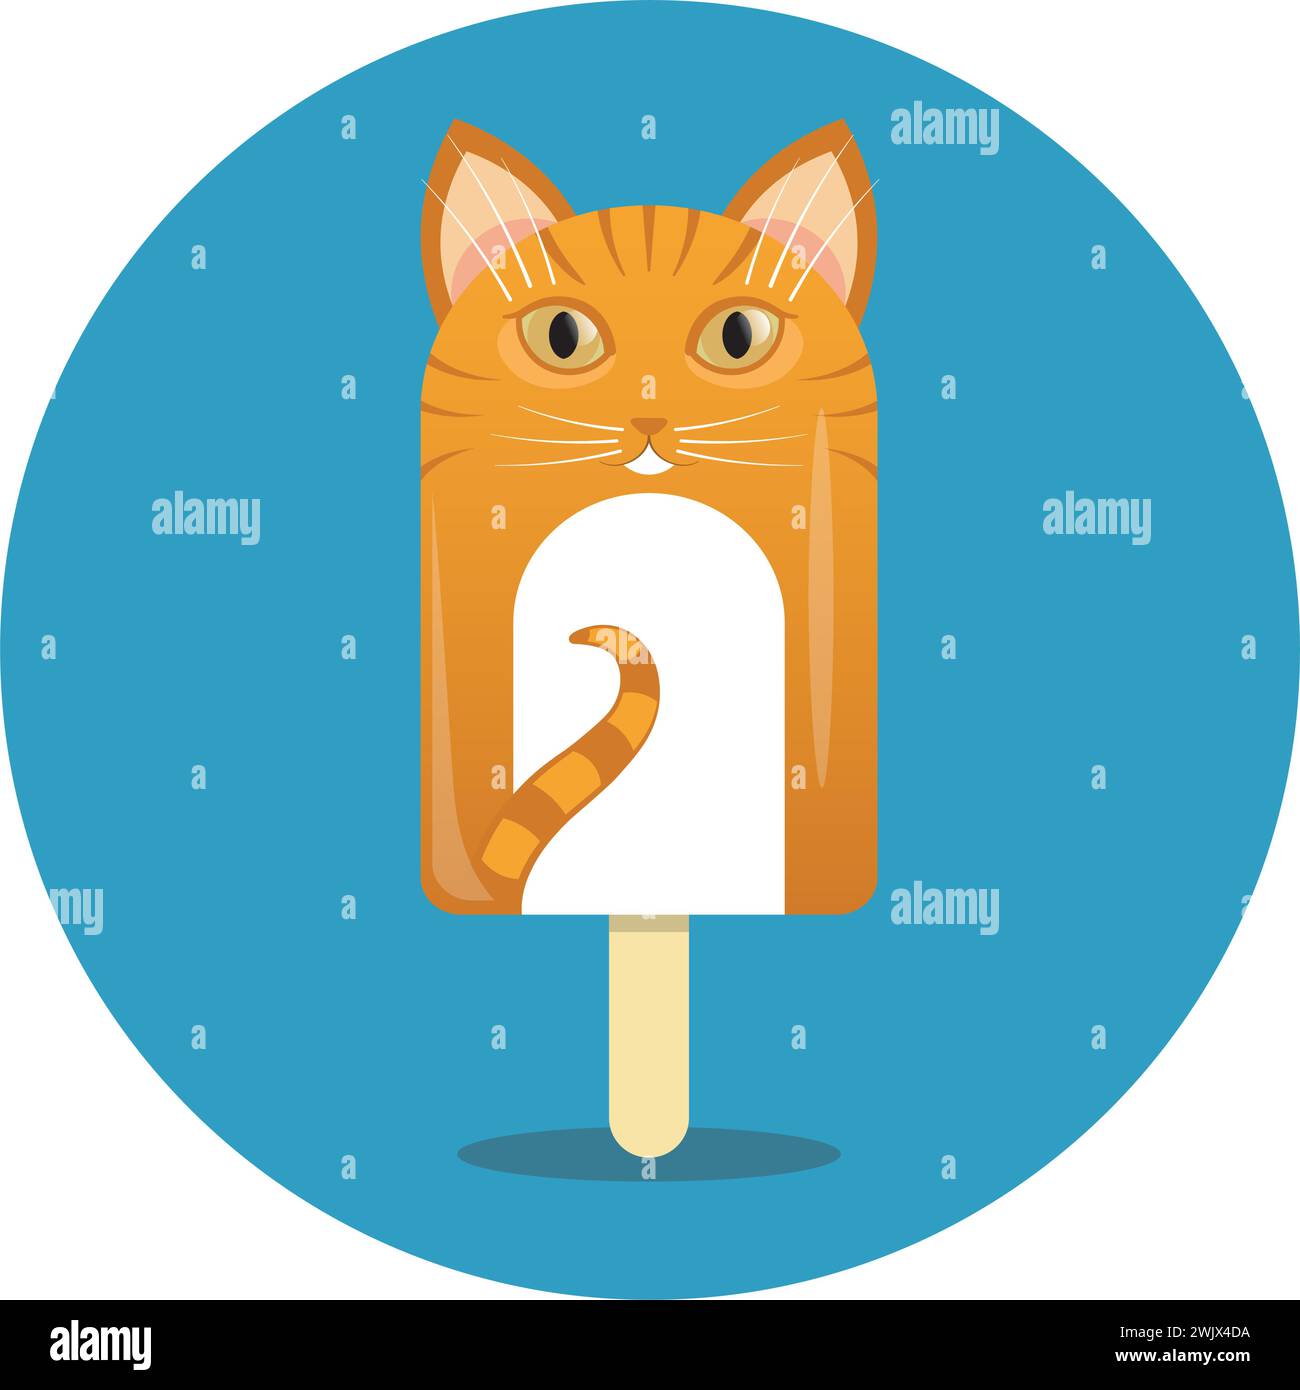 Katzenförmiges Eis, komplett mit haselnussbraunen Augen und einem Schwanz, verleiht dem klassischen Sommergenuss eine unterhaltsame Note Stock Vektor